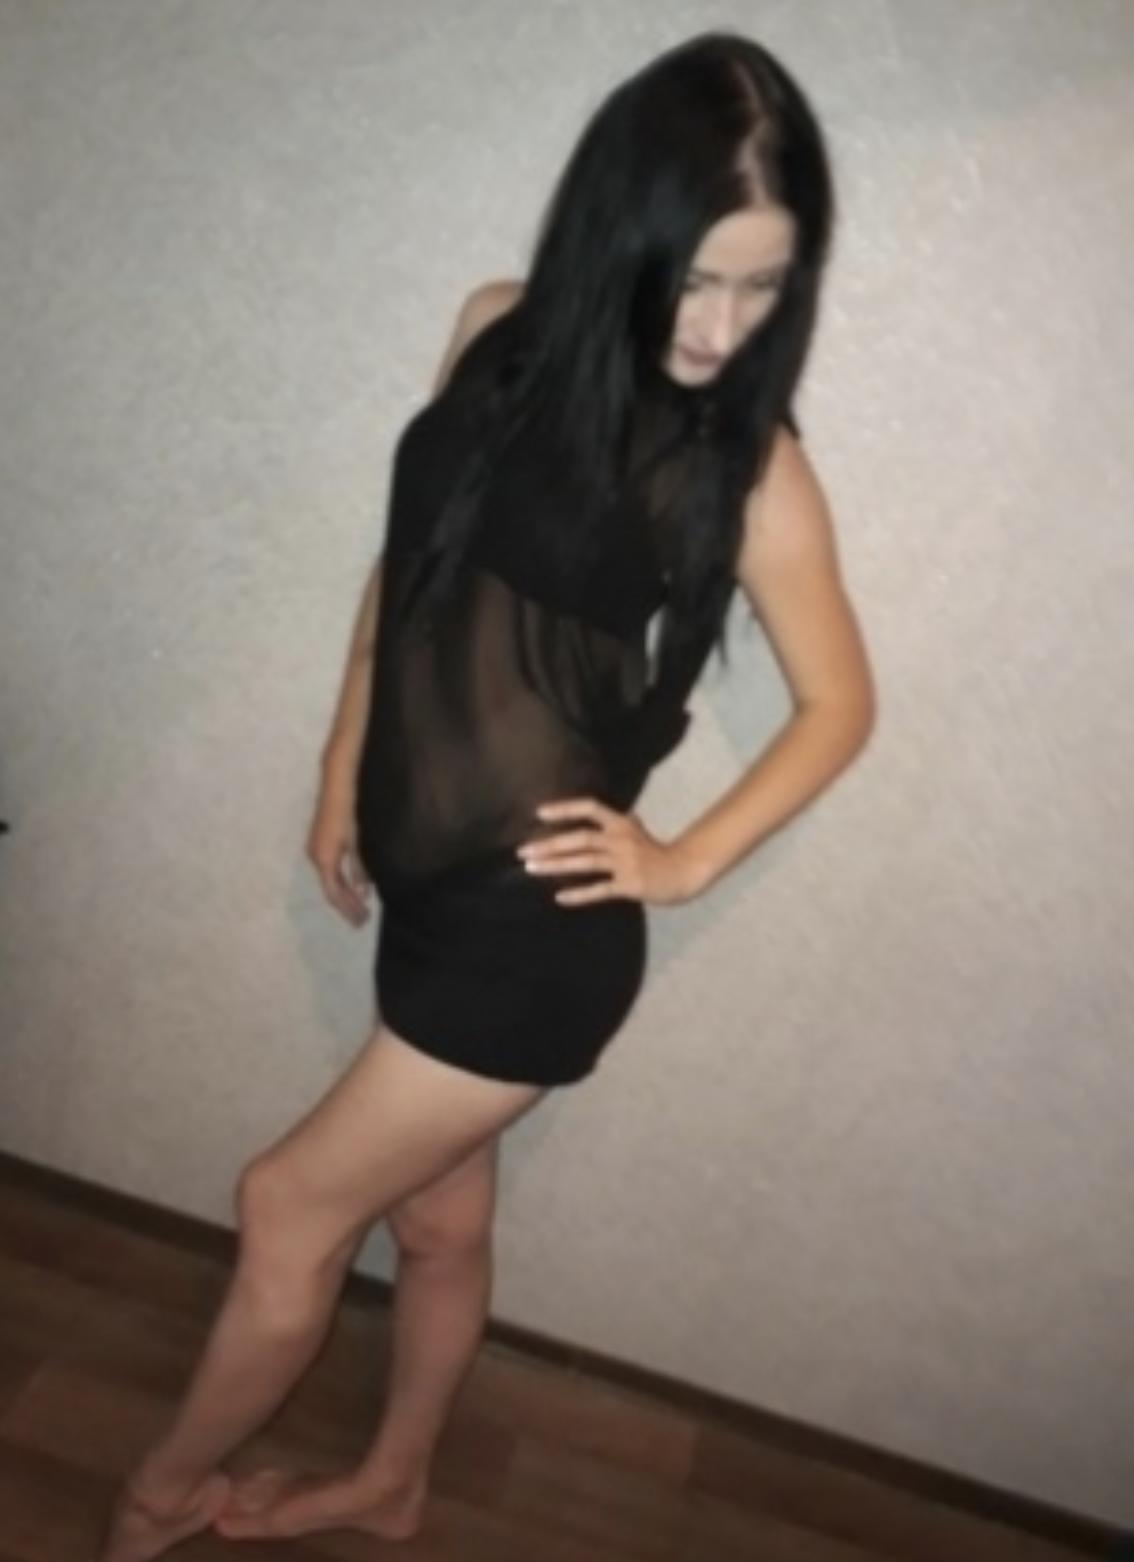 Проститутка Лина, фото 4, тел: 0636076672. Оболонский район - Киев